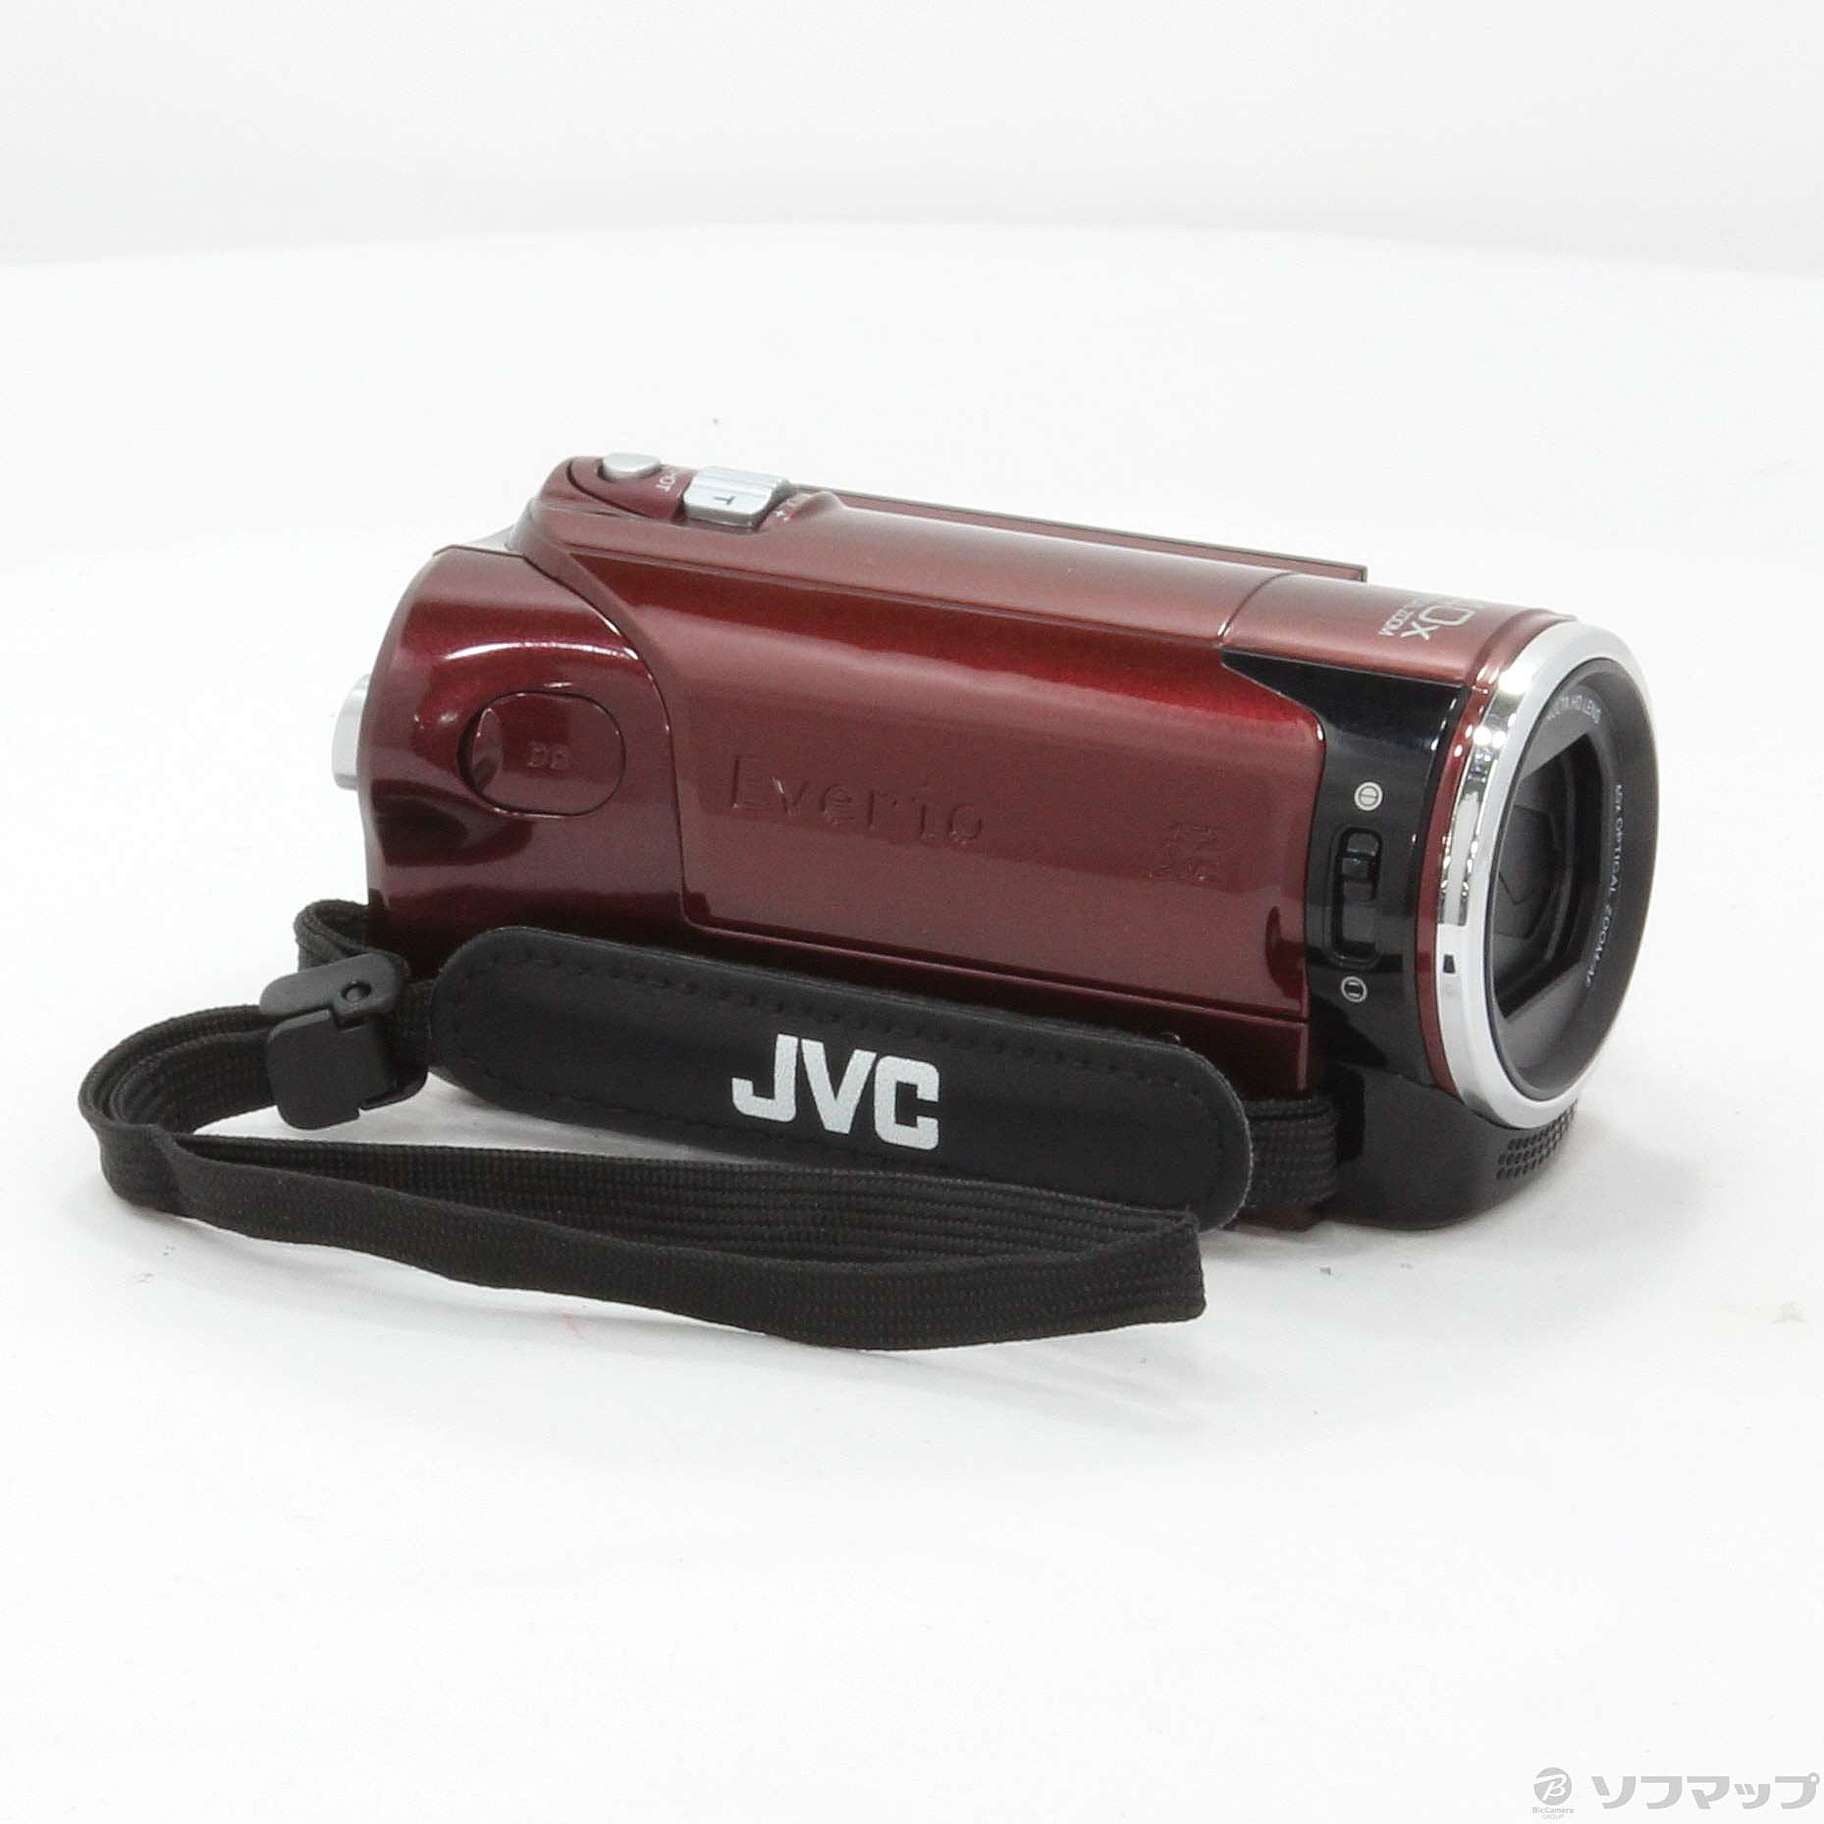 【通販値下】【遠くの被写体も綺麗】JVC ビデオカメラ GZ-HM450-R ルージュレッド アクションカメラ・ウェアラブルカメラ